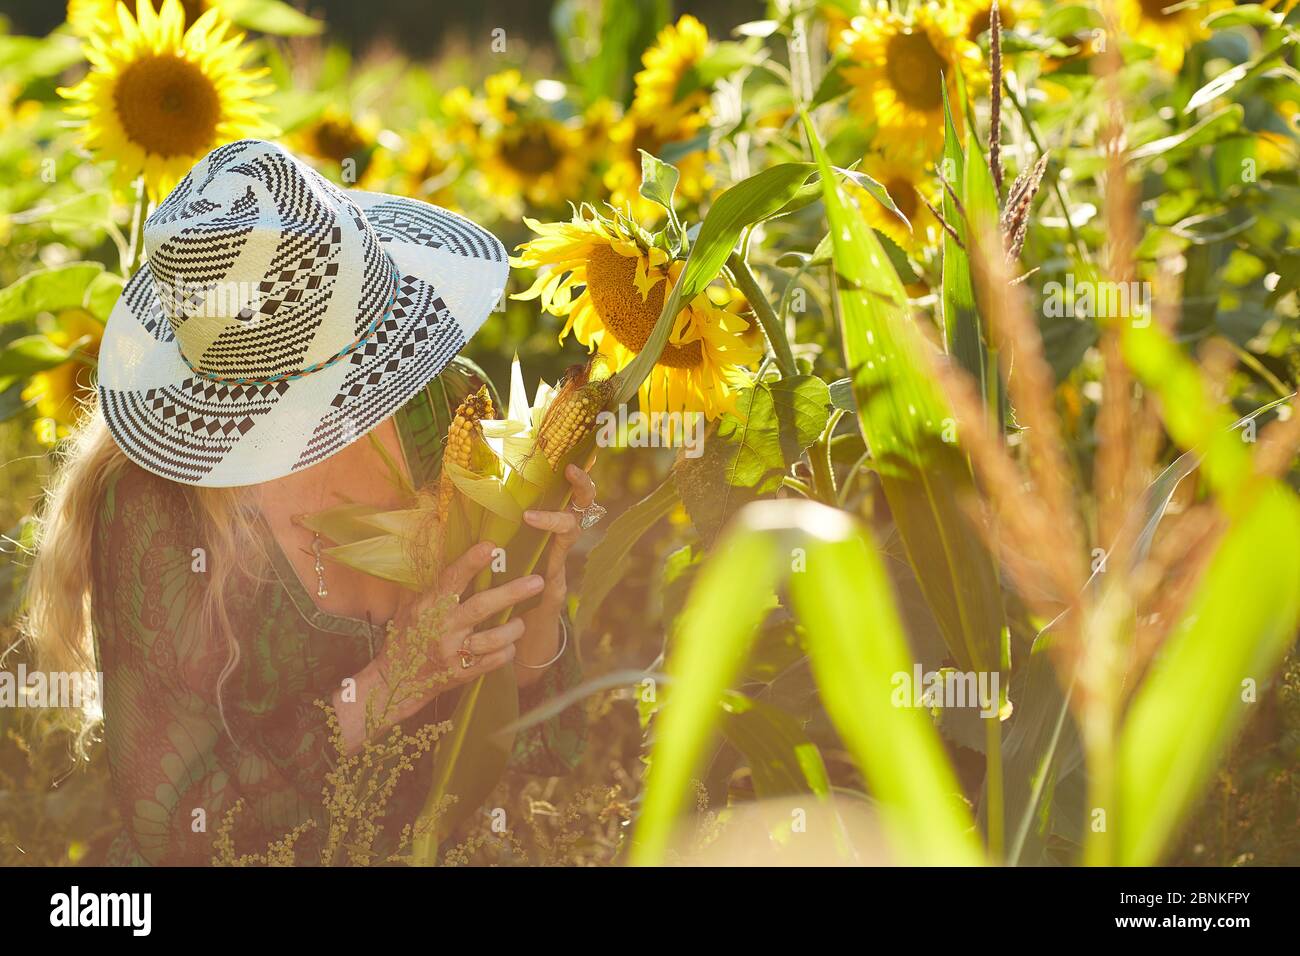 Frau mittleren Alters, Gesicht nicht erkennbar, Sonnenhut, grünes Kleid, Sonnenblumenfeld, Mais auf der Kohle Stockfoto